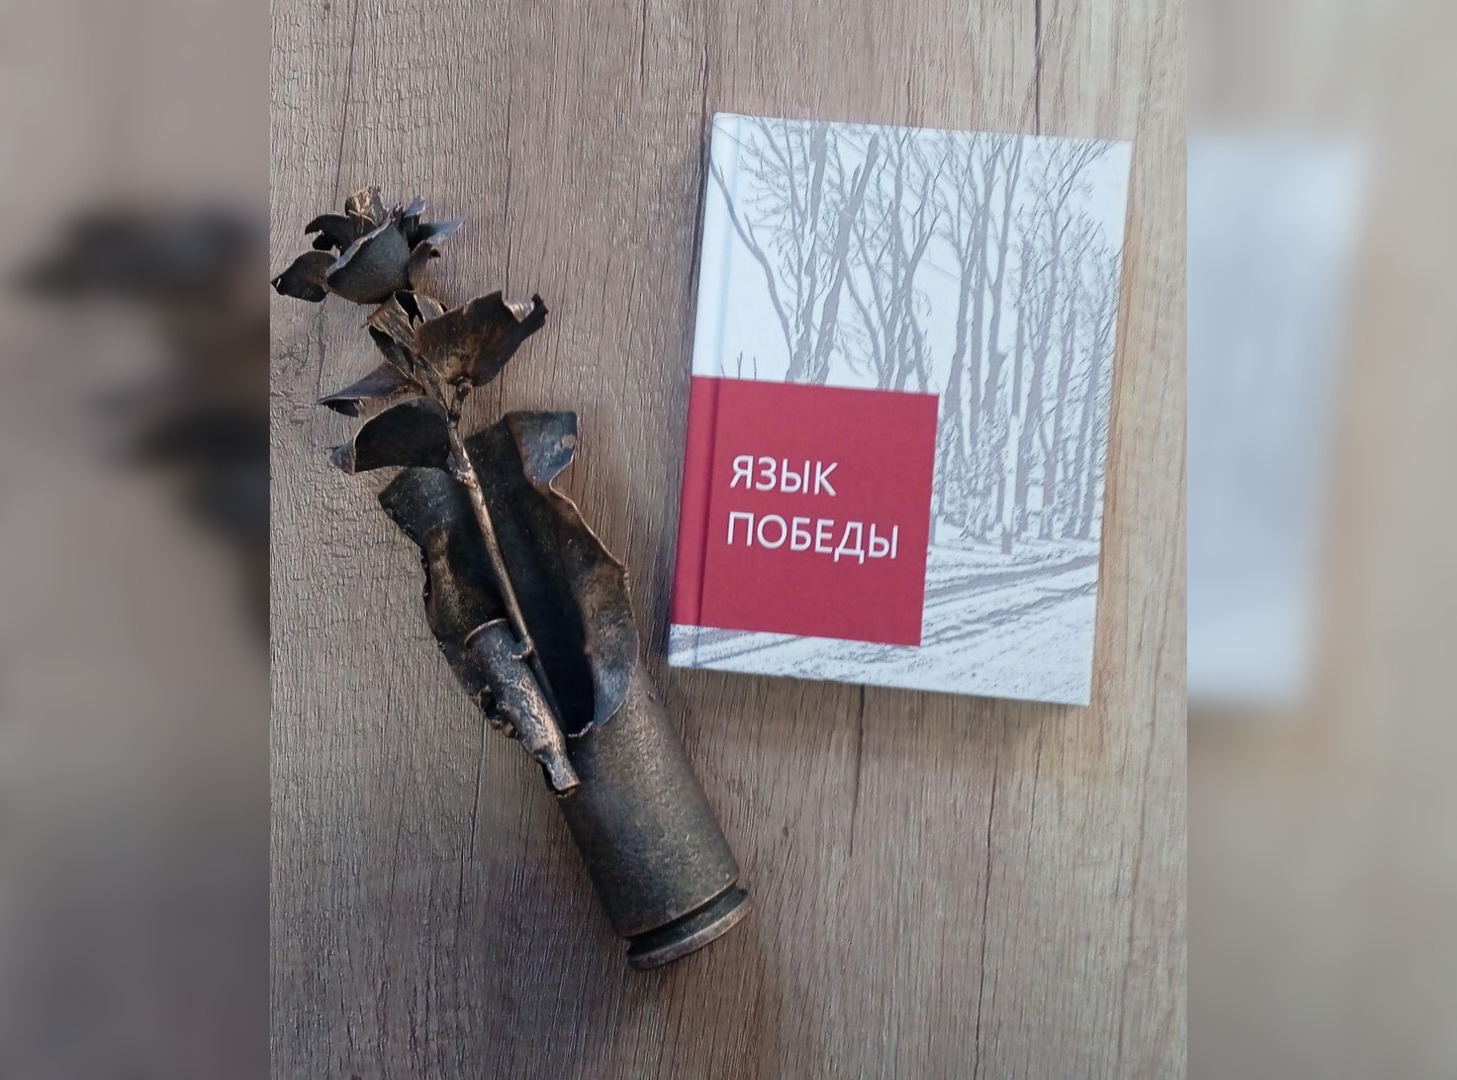 Во Владимире выпустили сборник стихов о СВО